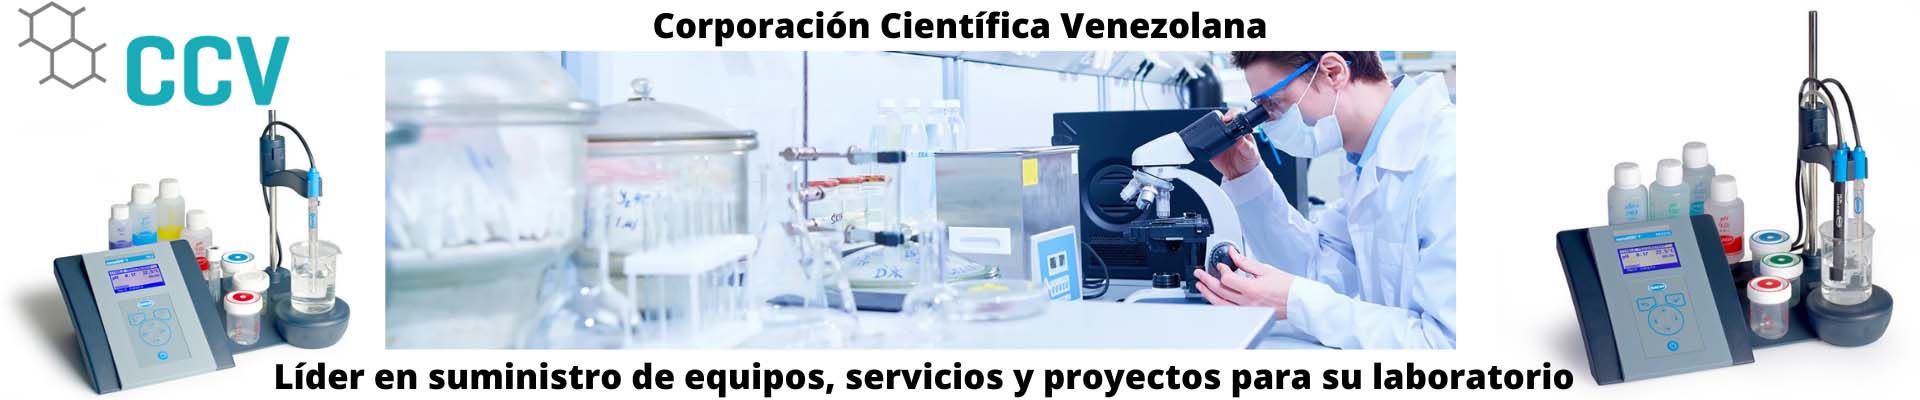 Banner corporacion cientifica venezolana